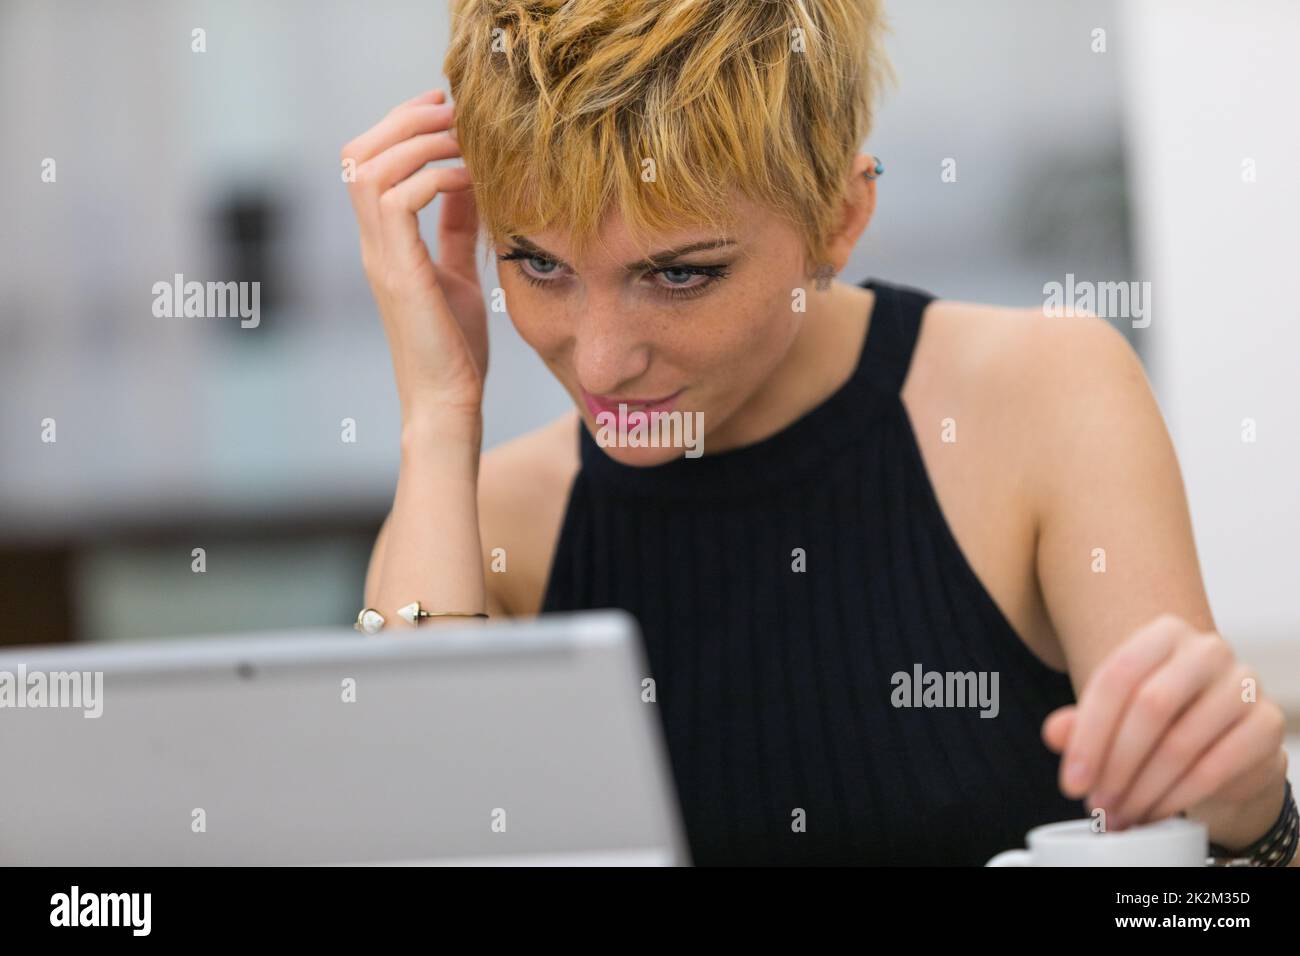 donna in oline datando su un internet point pubblico Foto Stock